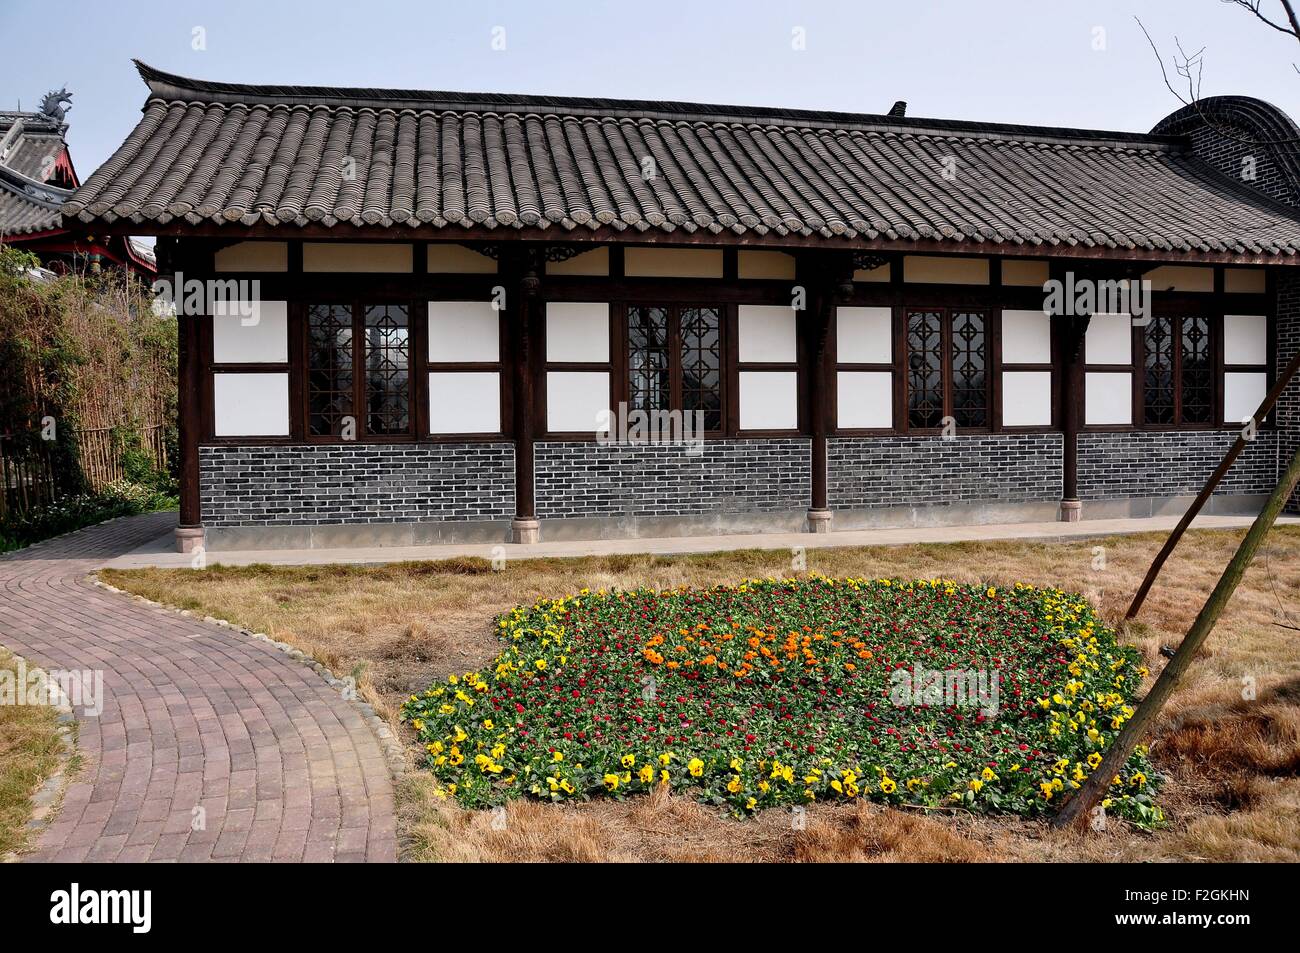 Sheng Pin, China:  Brick and half-timbered building at the General Yin Chang Heng Historic House Museum Stock Photo